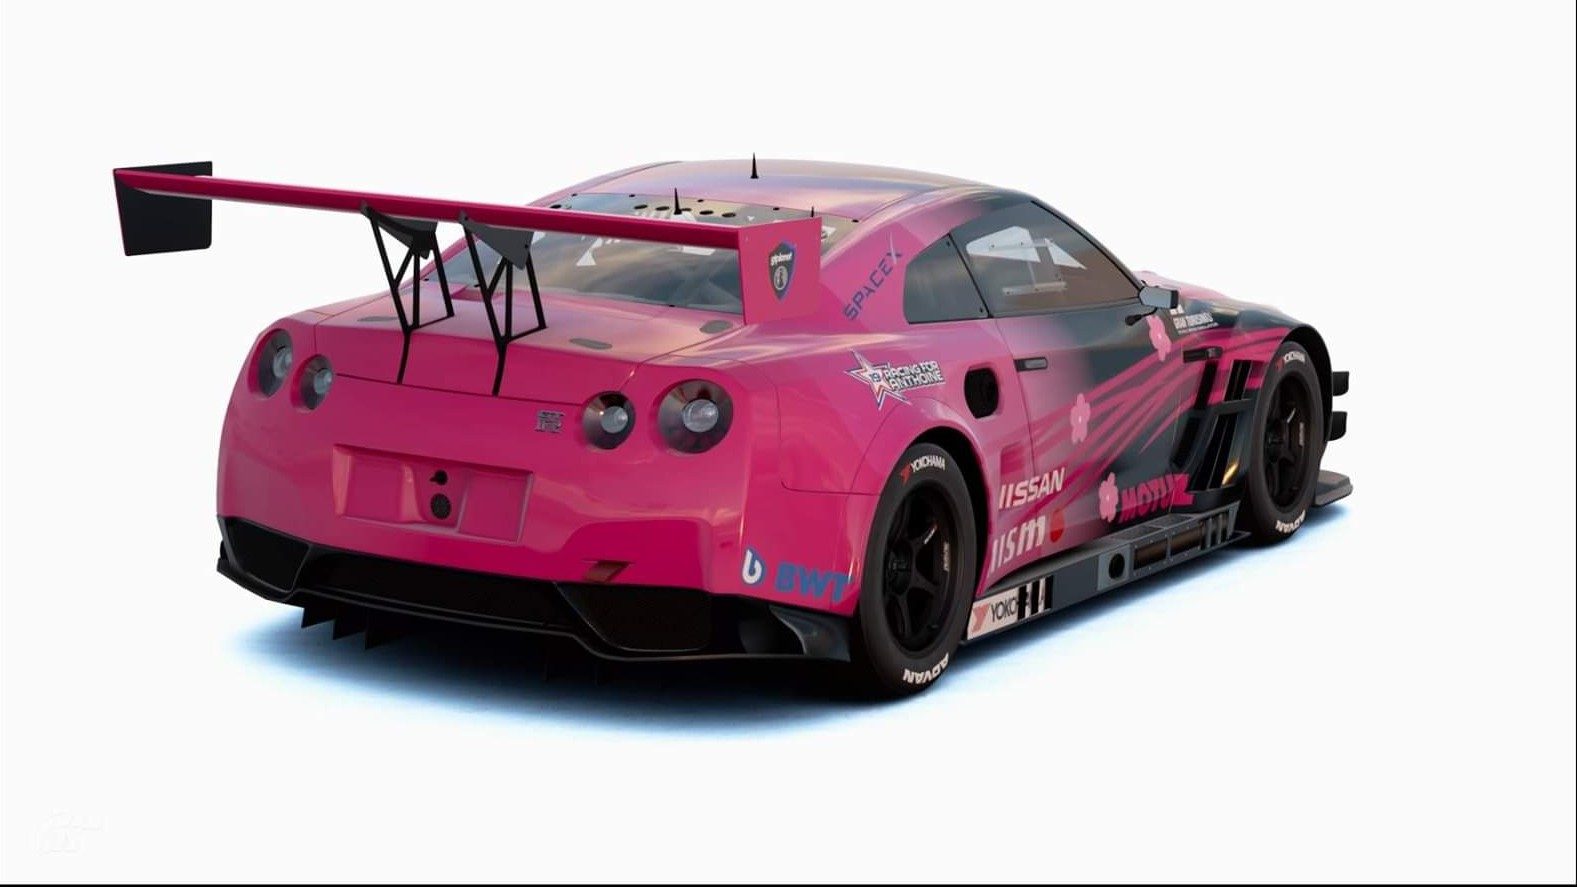 Pink Nissan back